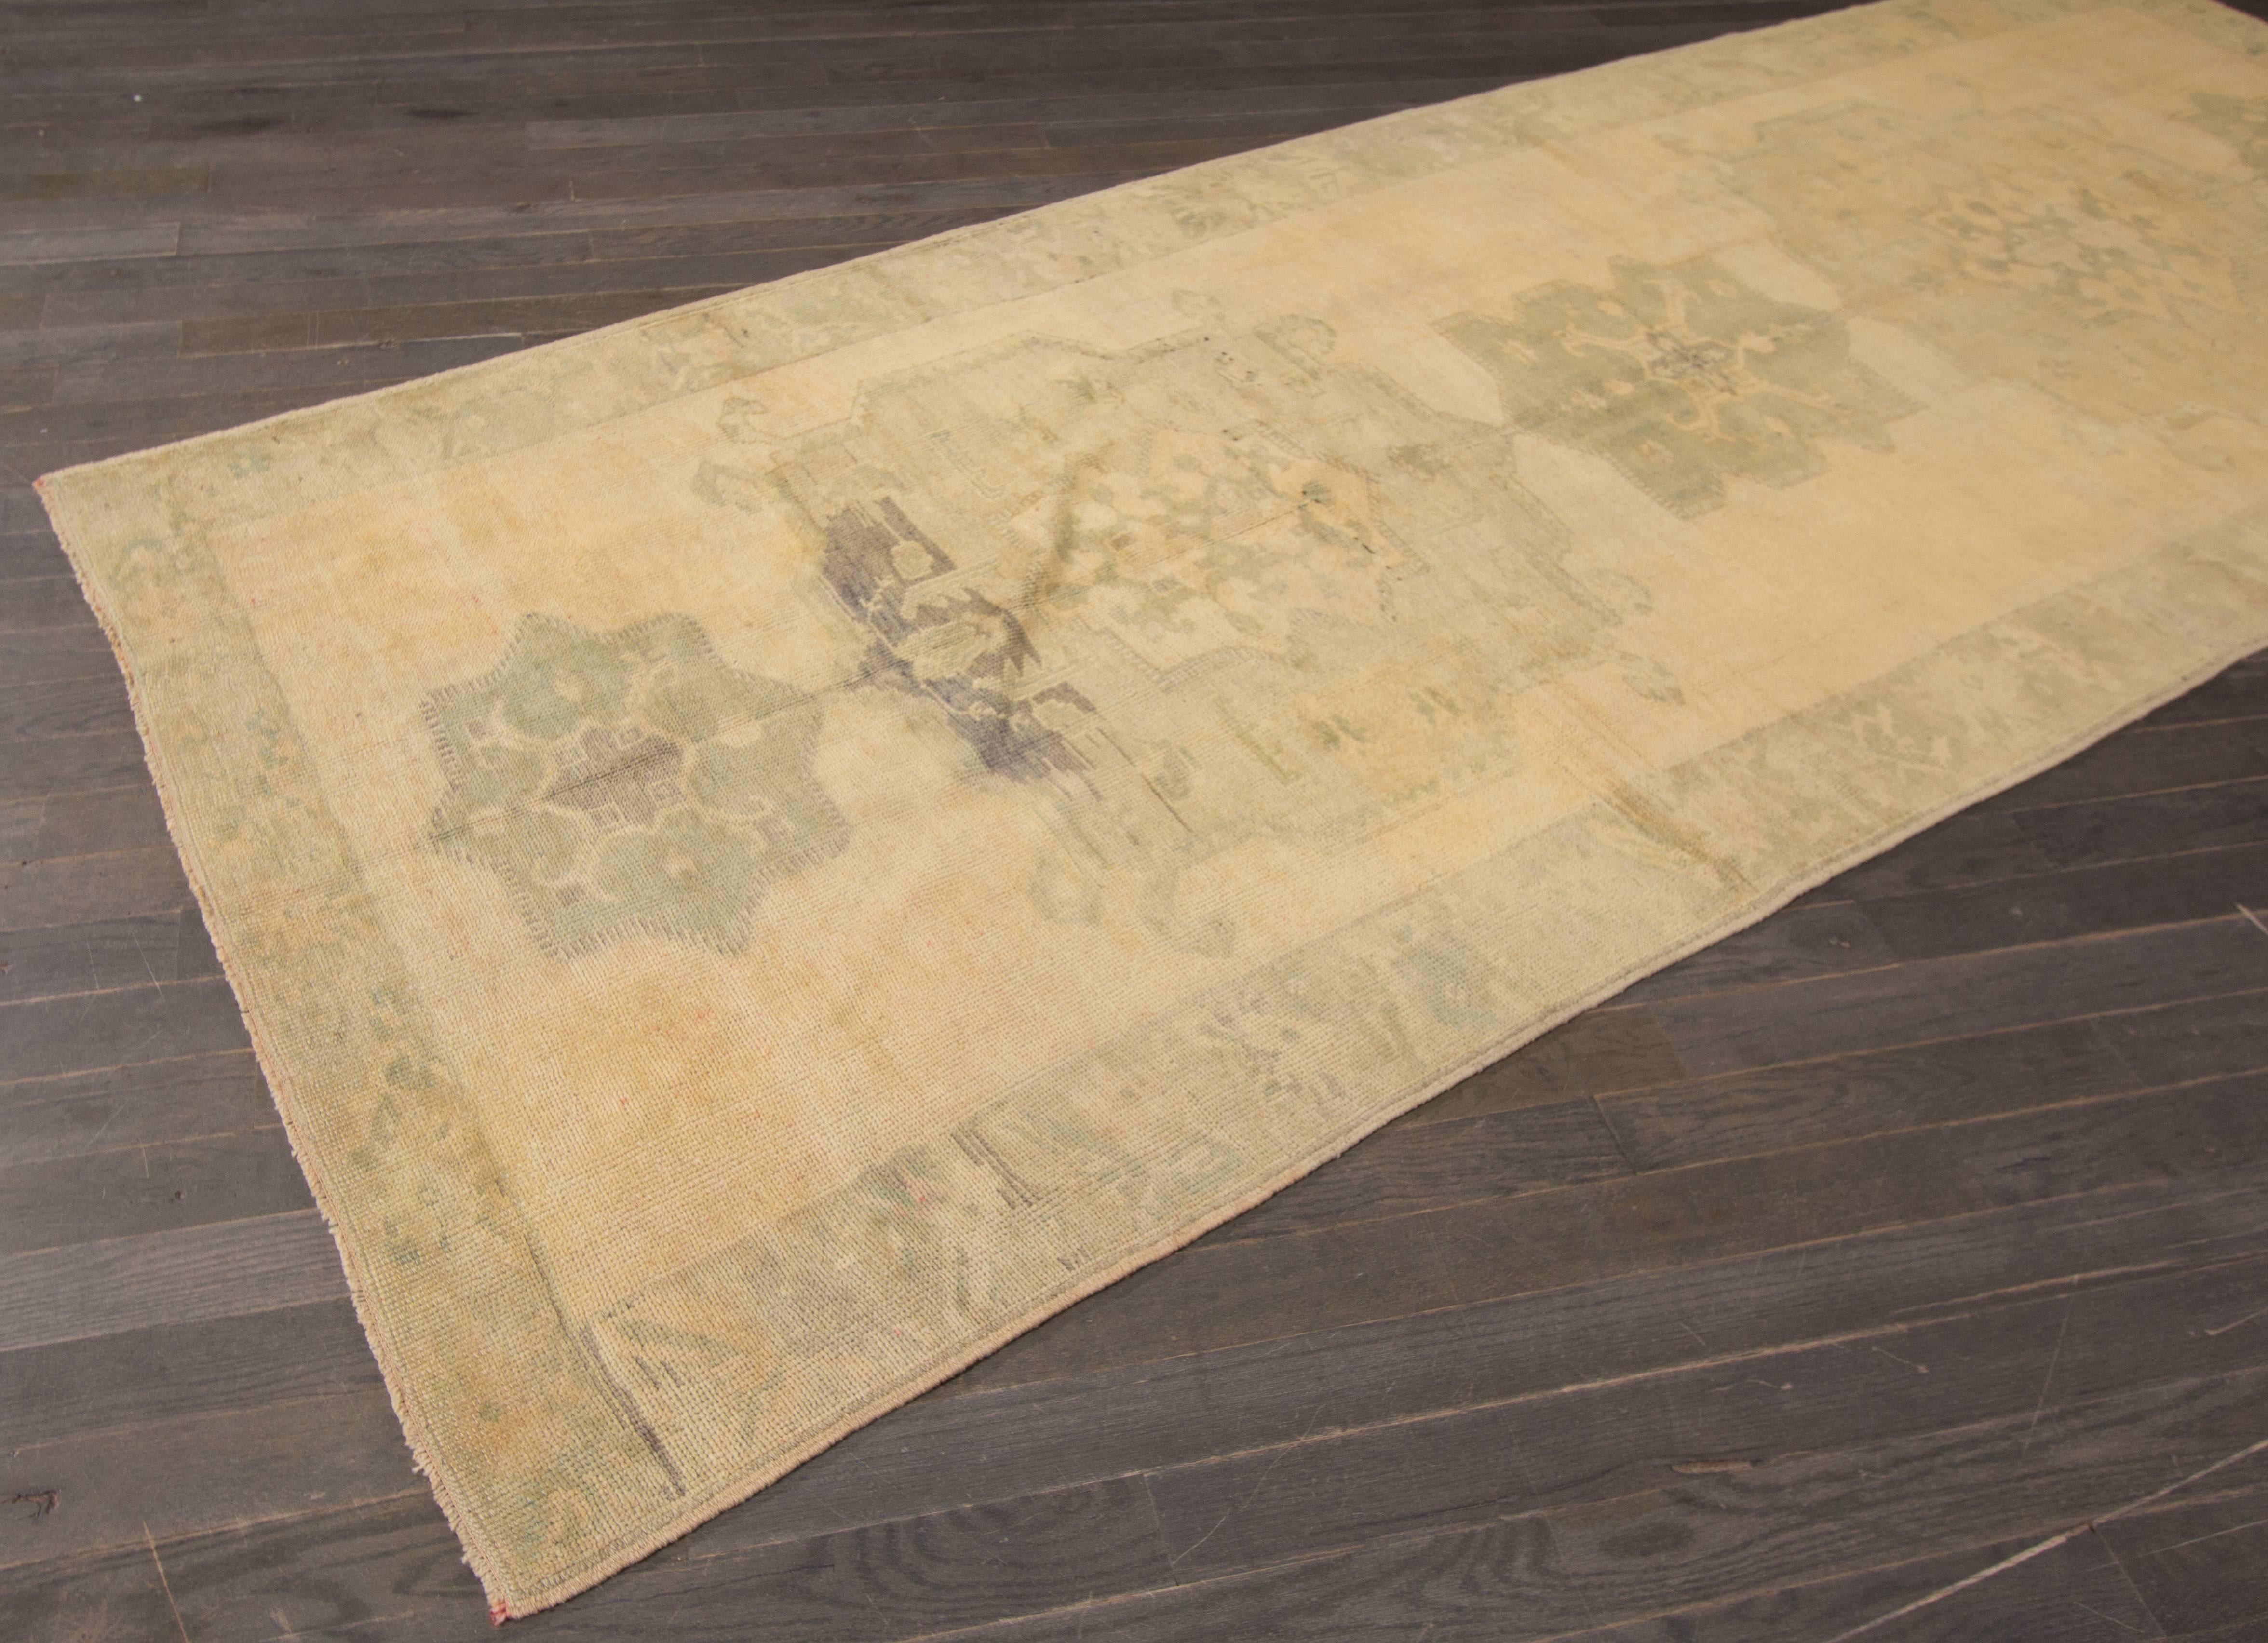 Ce magnifique tapis antique Khotan à motifs noués à la main rendra votre sol splendide. Cette collection est réalisée en laine. Ses mesures sont : 4'.9 x 11'.11
Ce tapis antique de Khotan a été fabriqué au Turkestan.